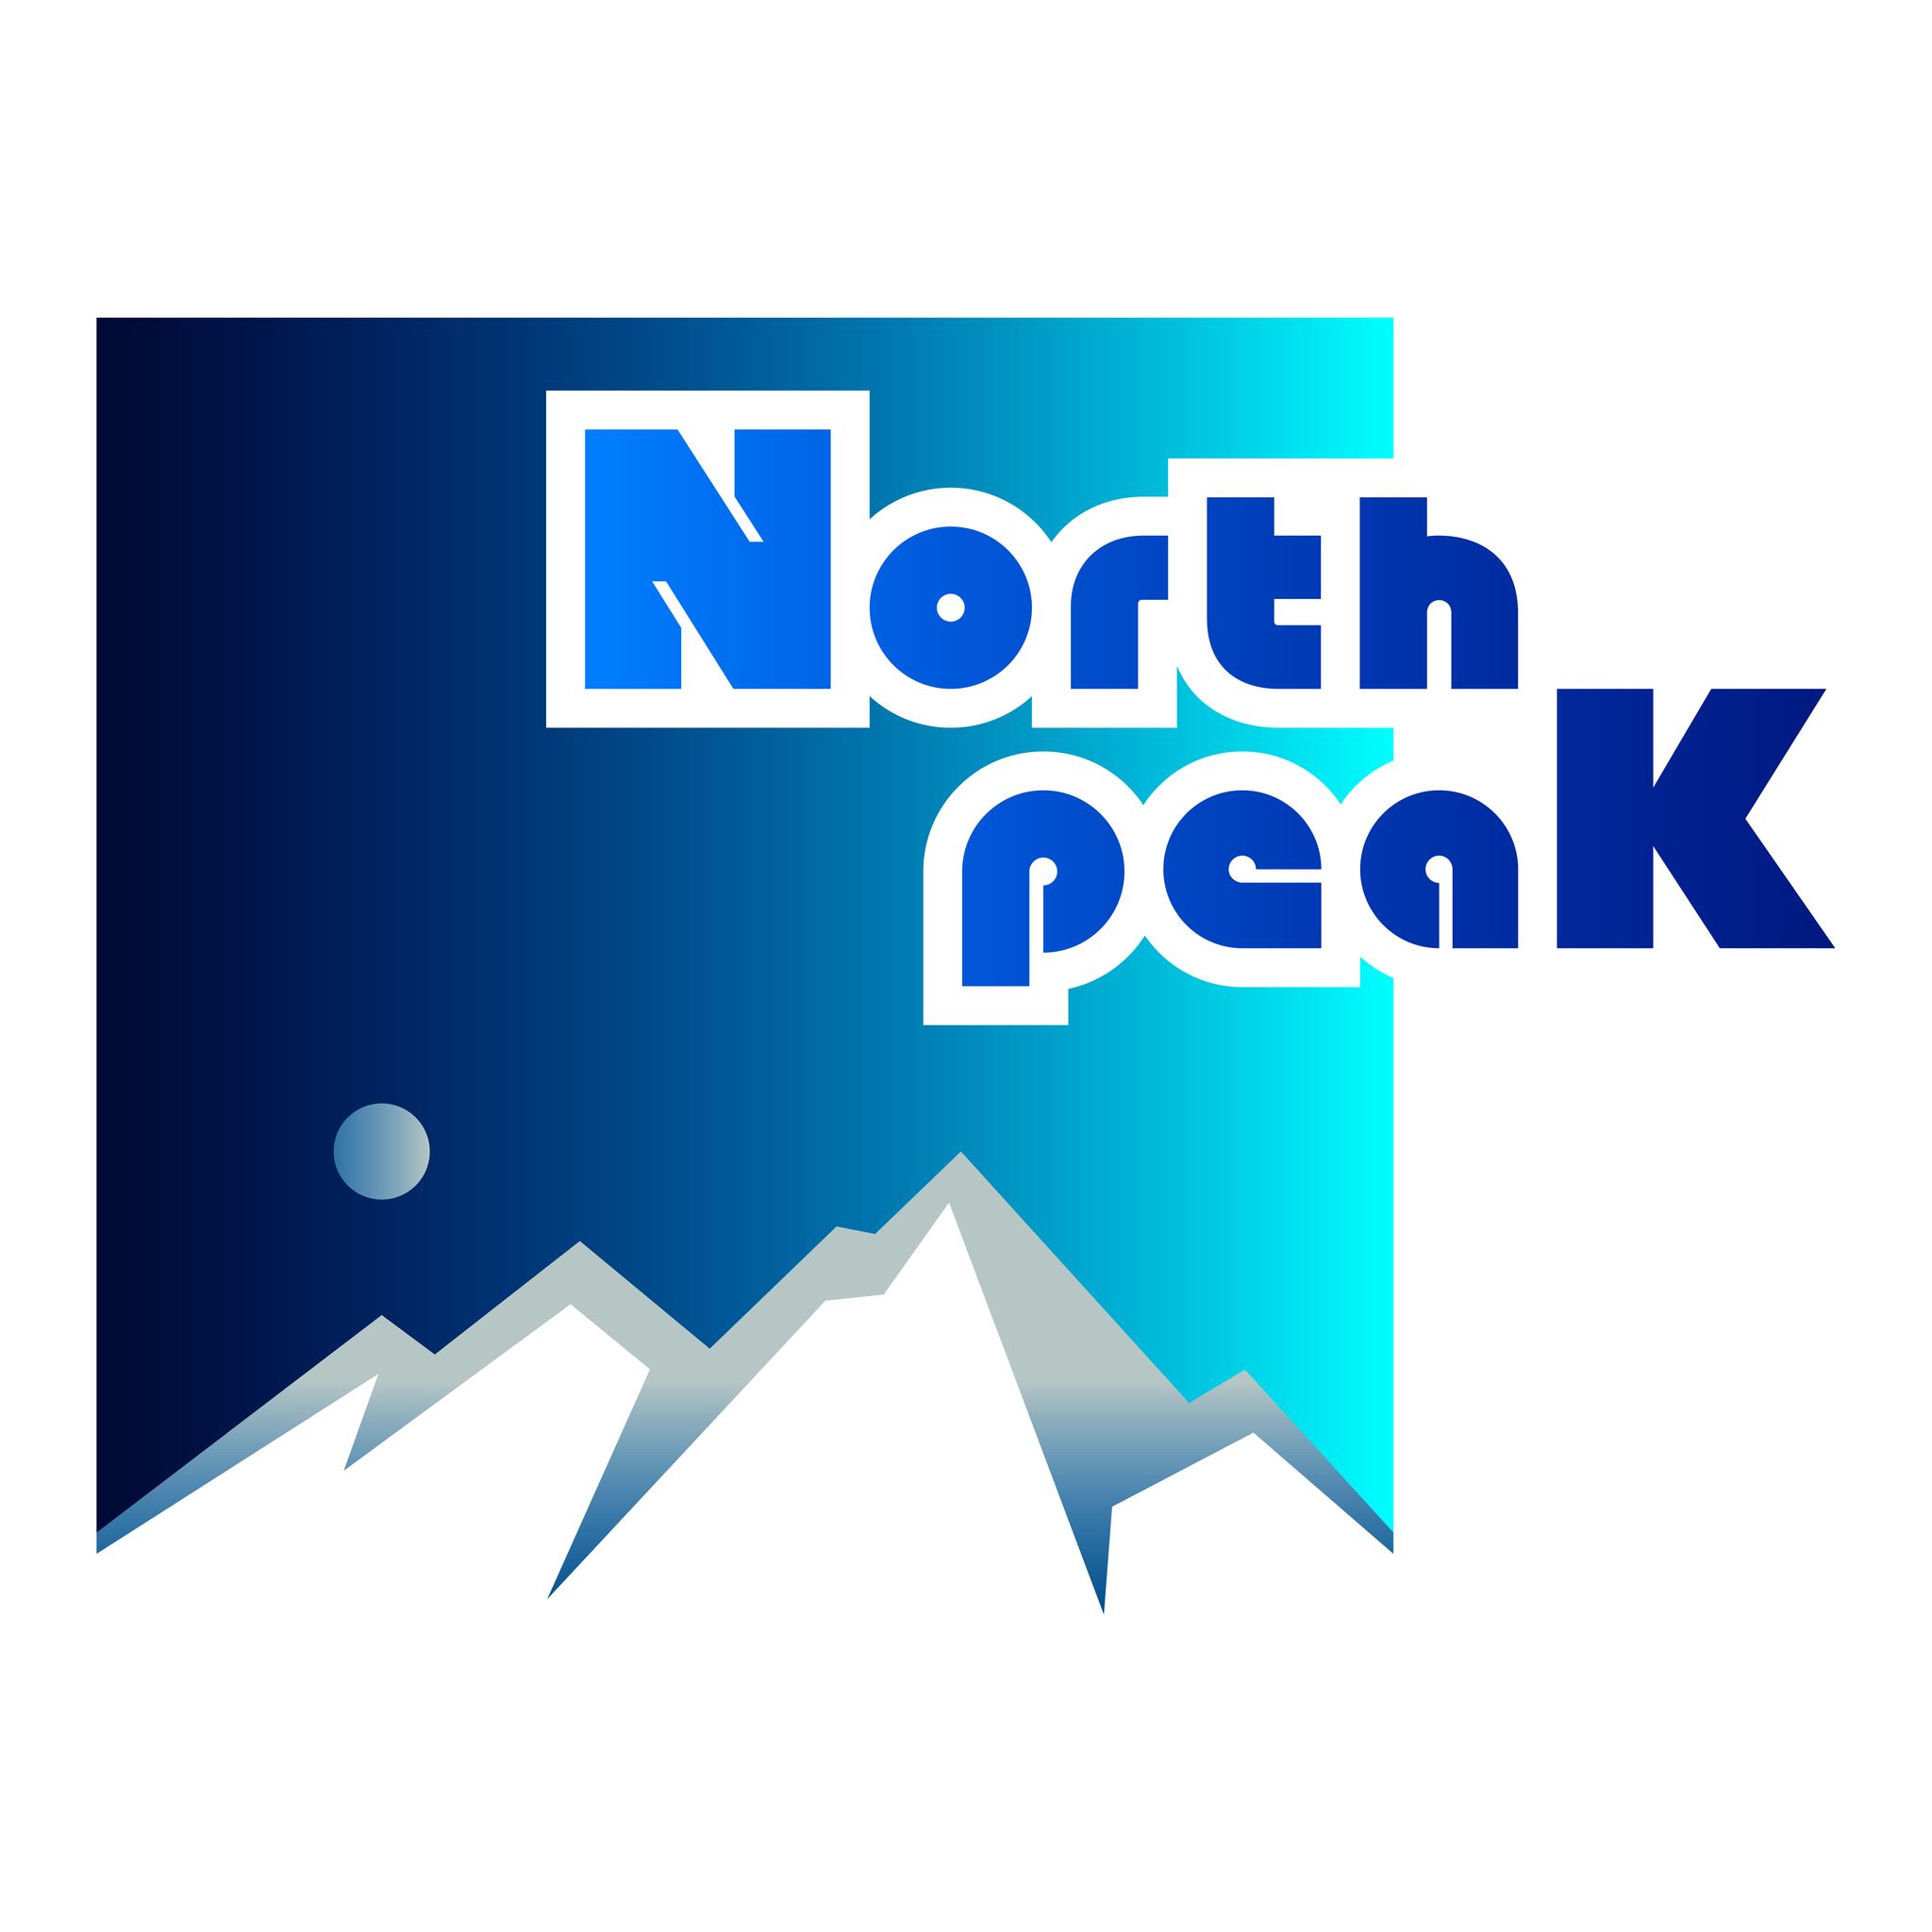 North Peak լեռնային ակումբ